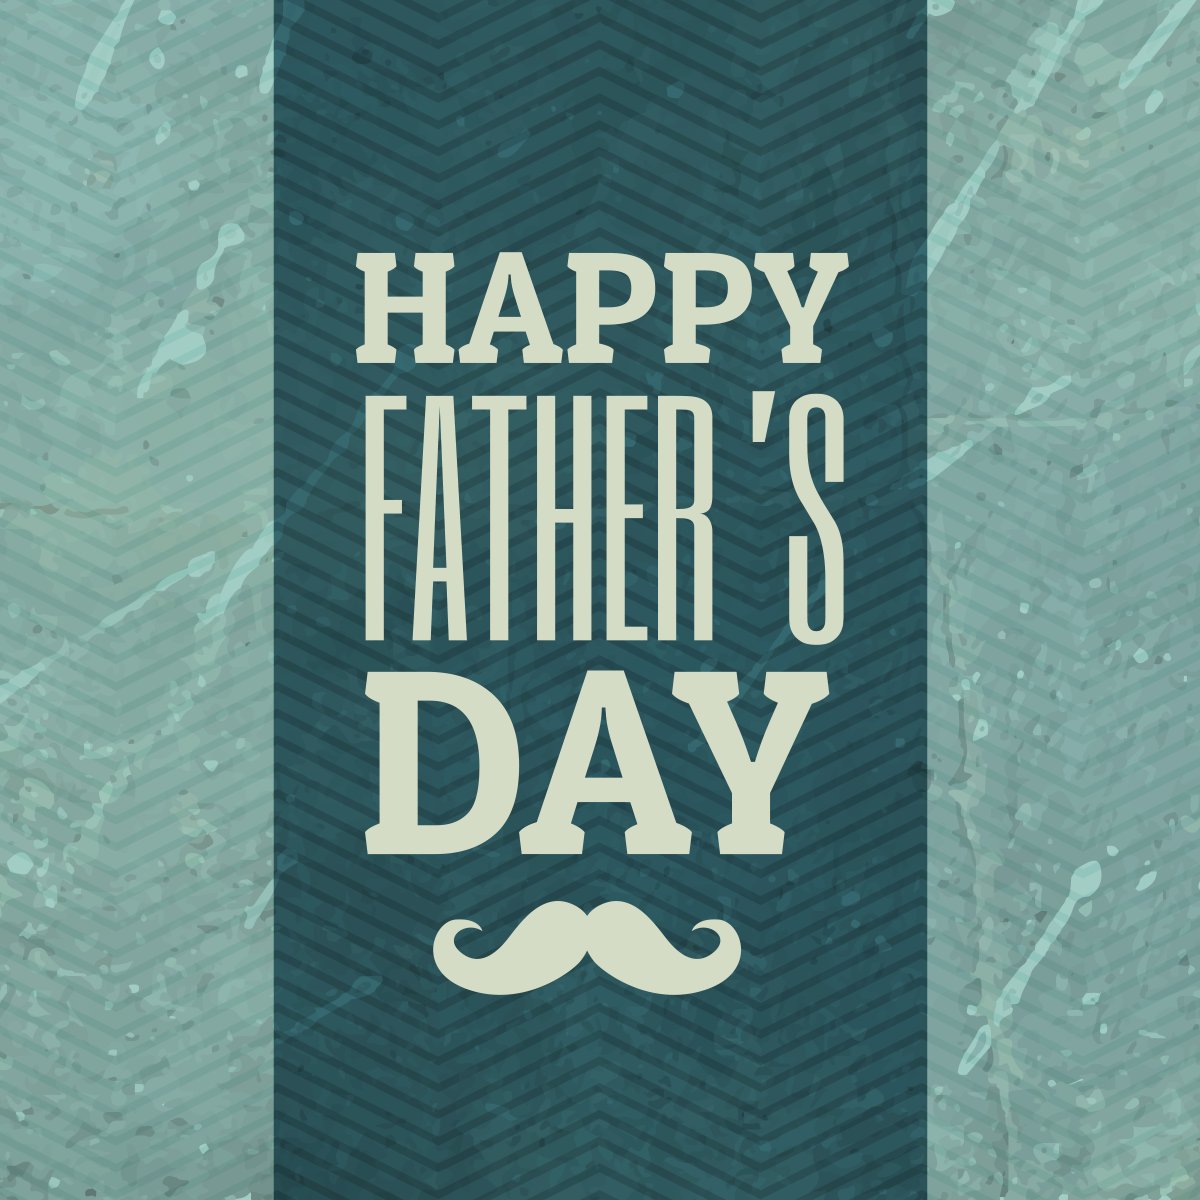 ow.ly/KVgR50OI5V1
#FathersDay #HappyFathersDay #Dad #ThankYouDad #kjtechnology #KJTechnology